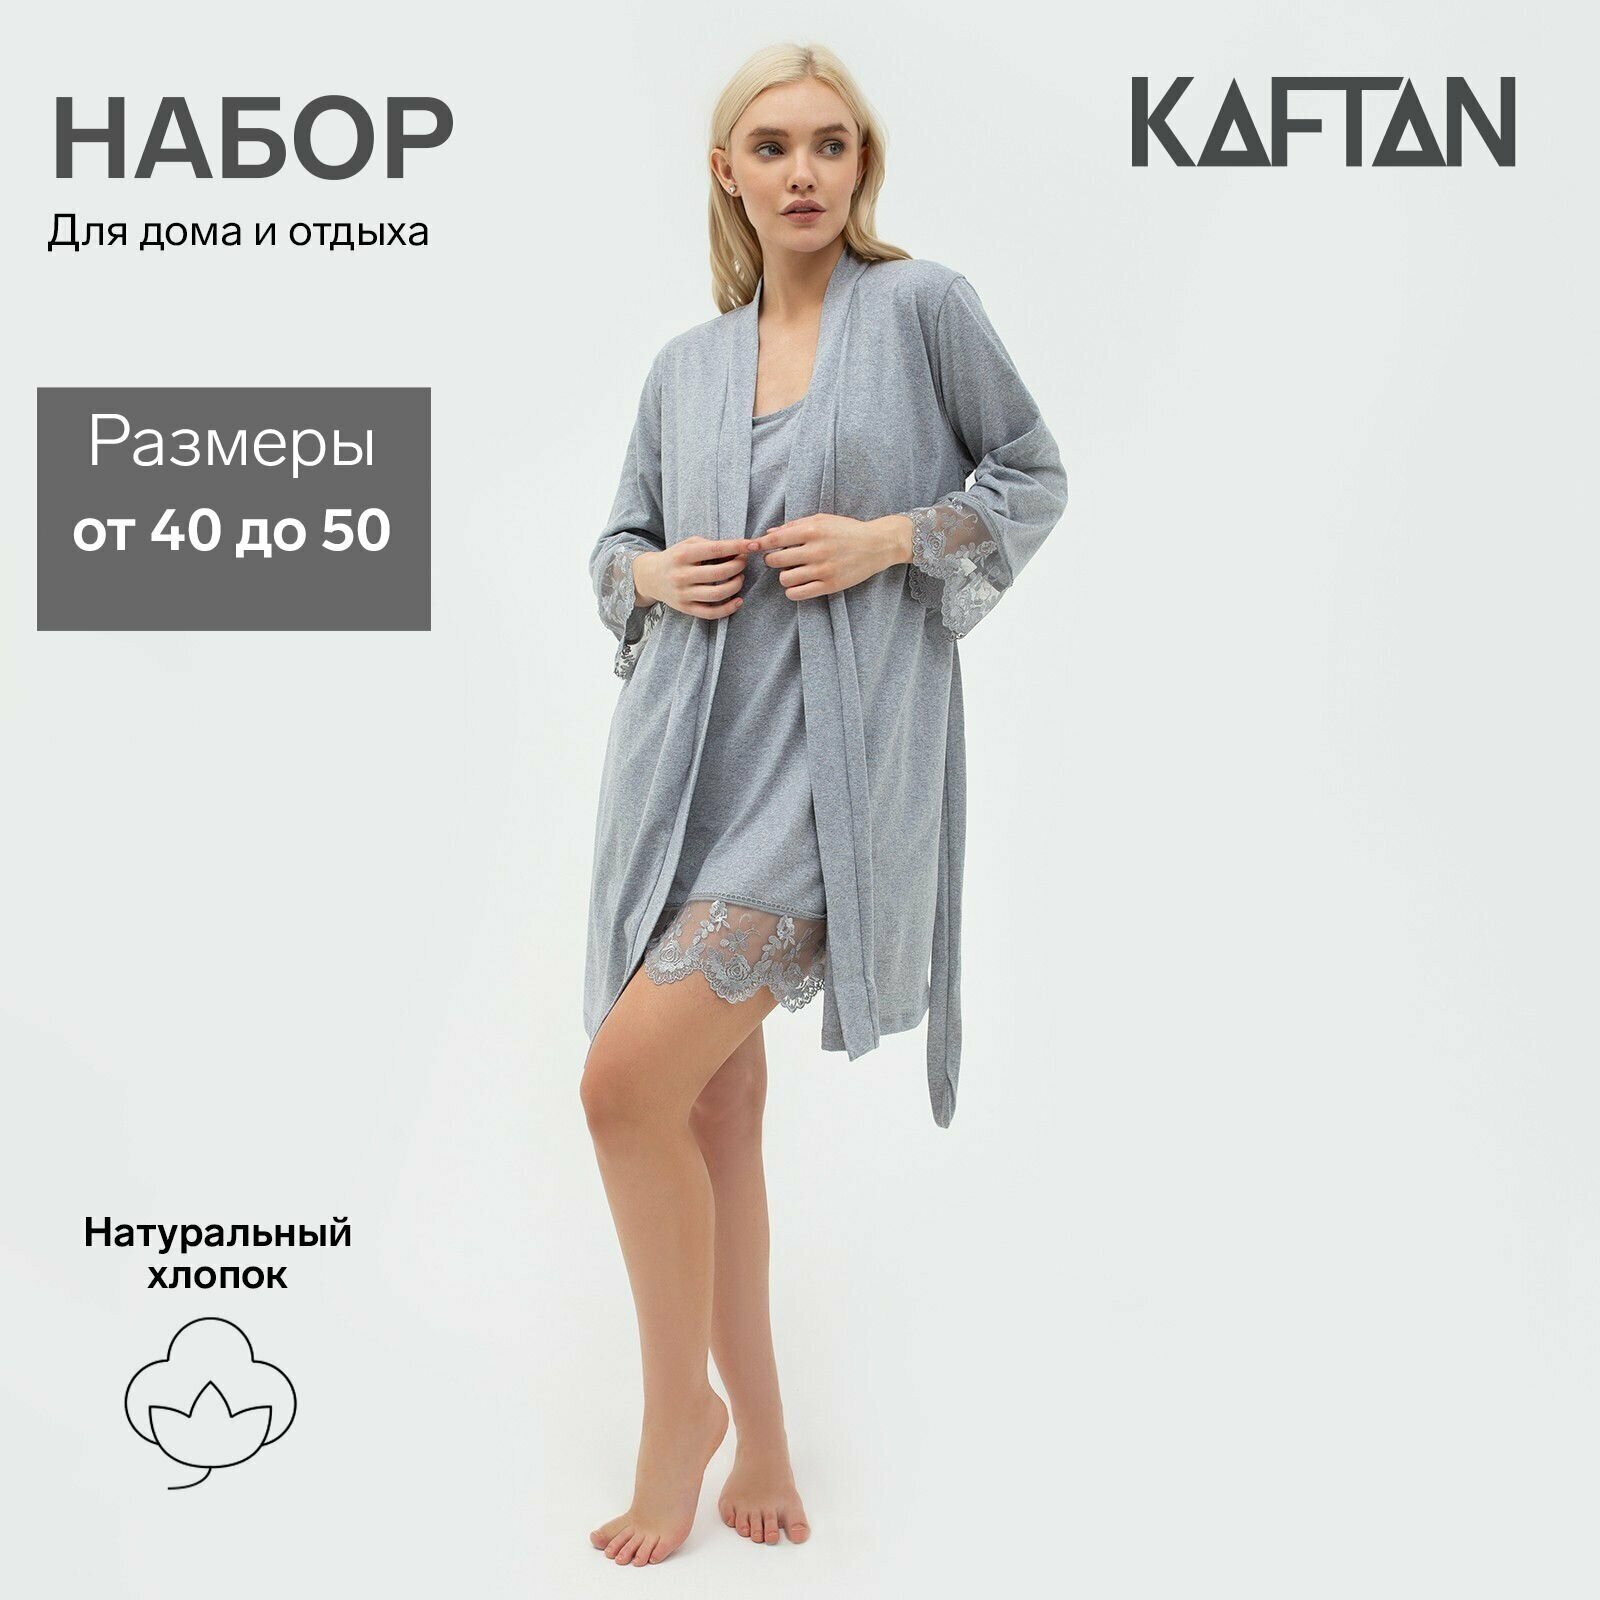 Набор женский (халат, сорочка) KAFTAN, р. 48-50, серый - фотография № 1